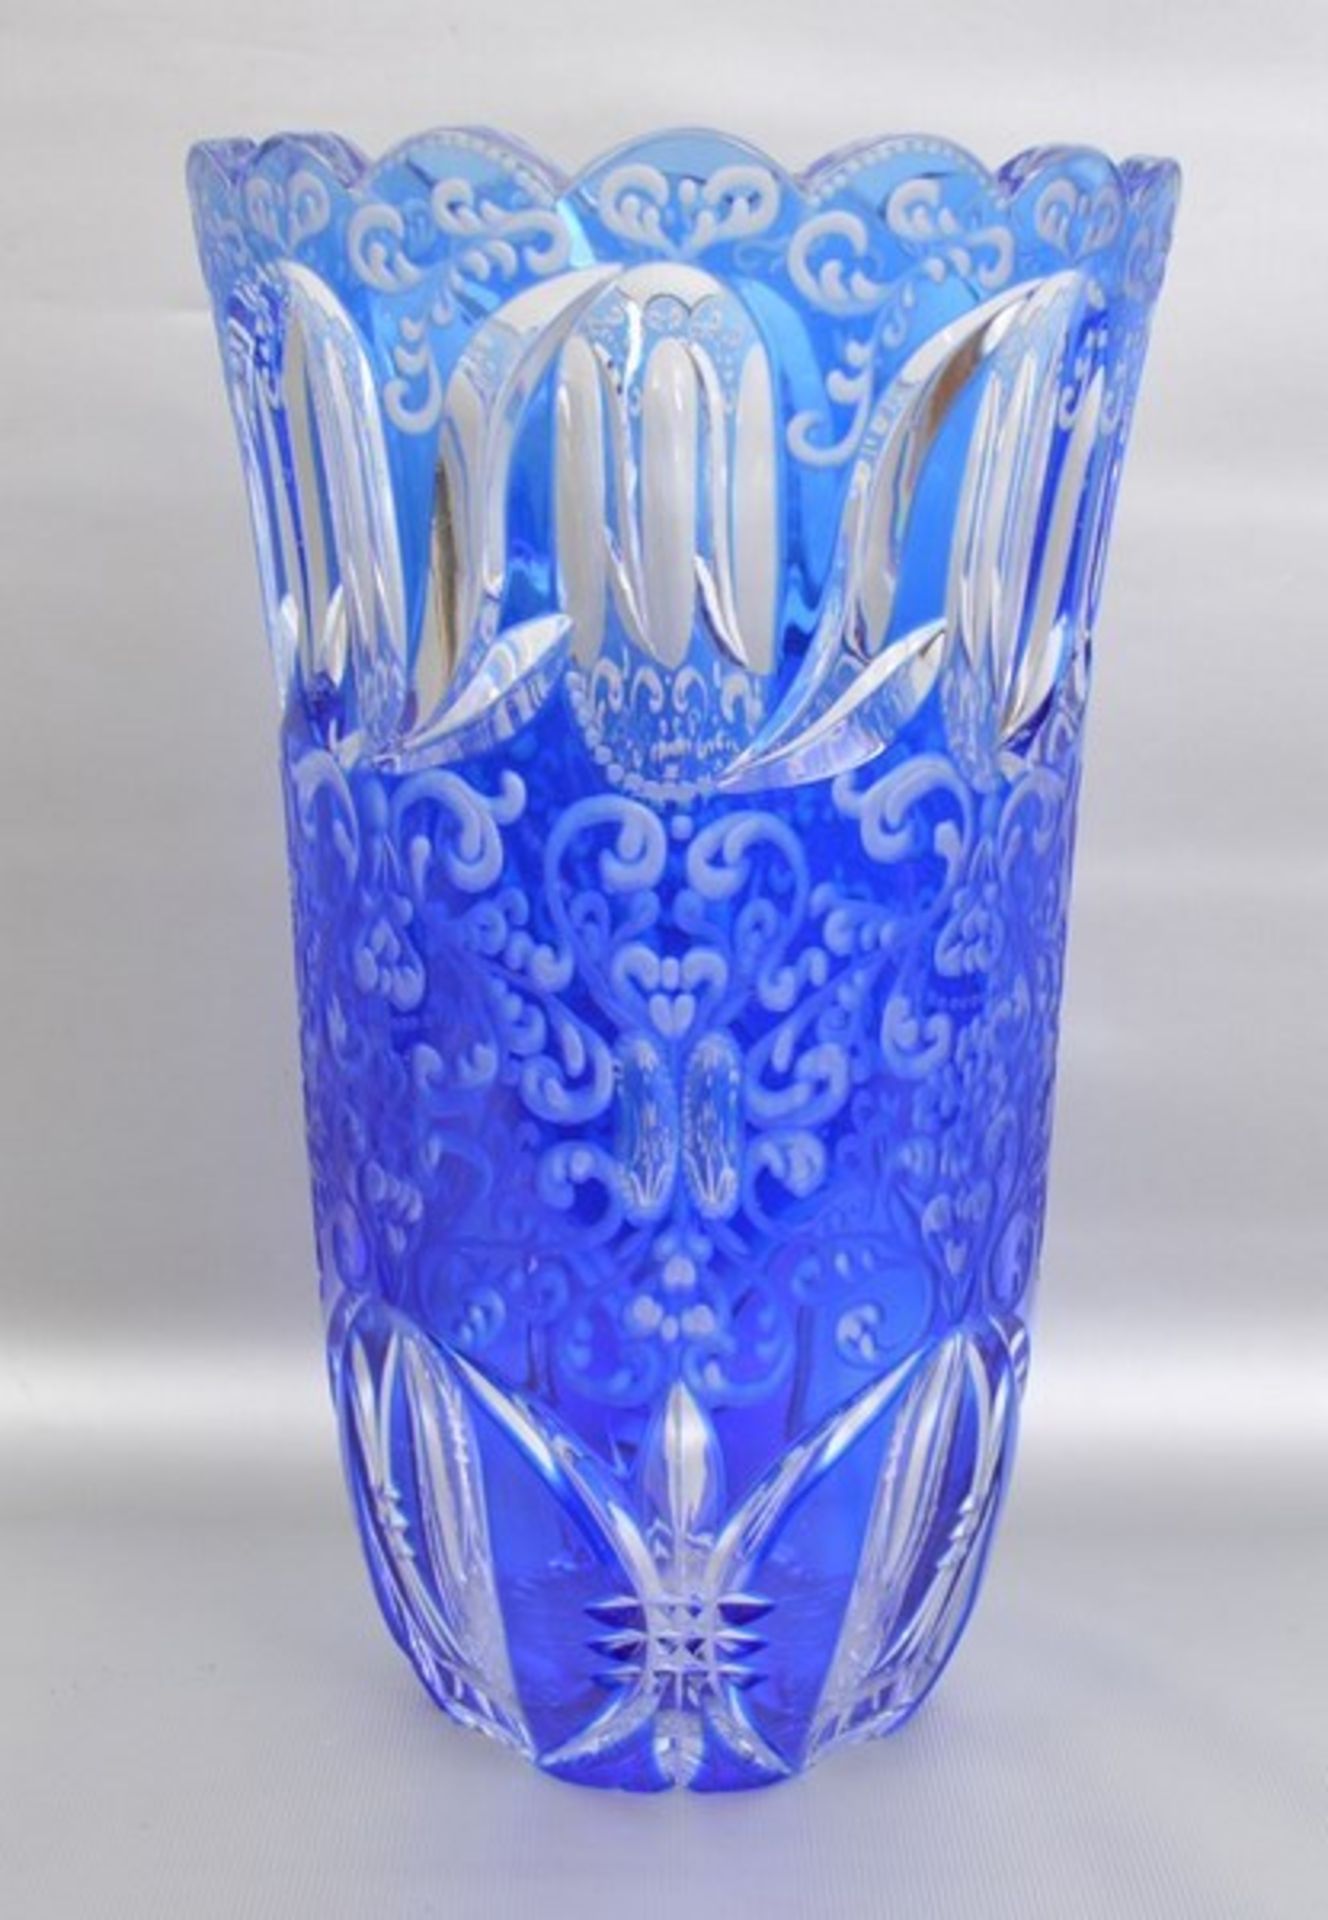 Vase farbl. Kristallglas, geschliffen verziert, gezackter Rand, mit blauem Überfang, H 26 cm